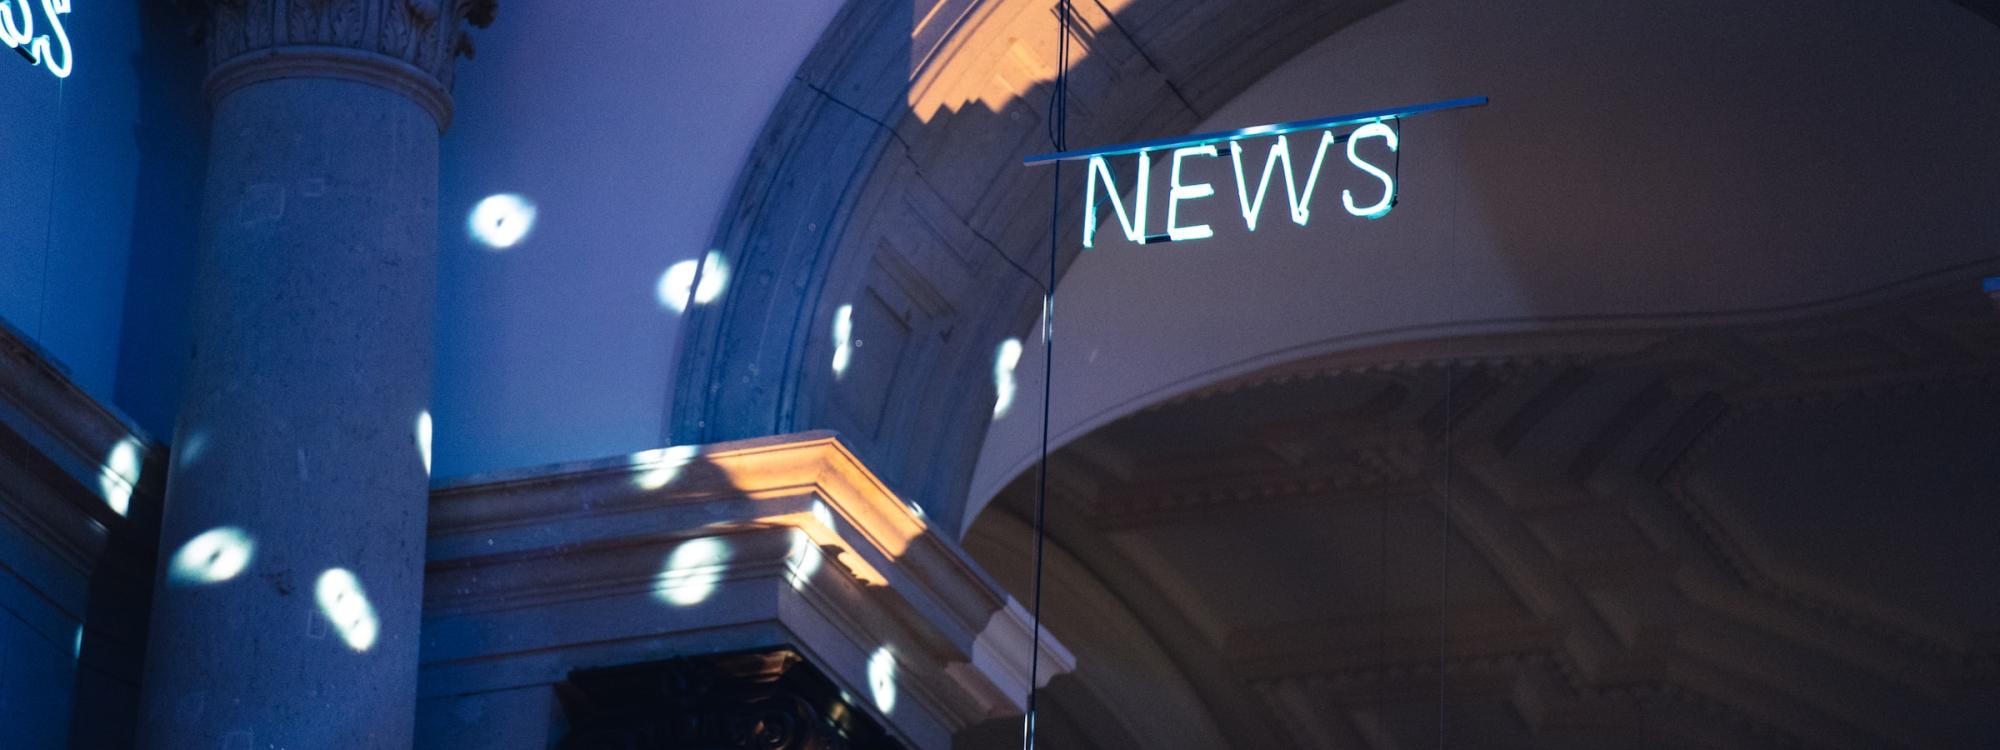 Ein Deckenbogen in einem alten Gebäude, vielleicht ein Museum, nur partiell beleuchtet, unter der Decke hängt ein Neonlicht, das das Wort "NEWS" formt.